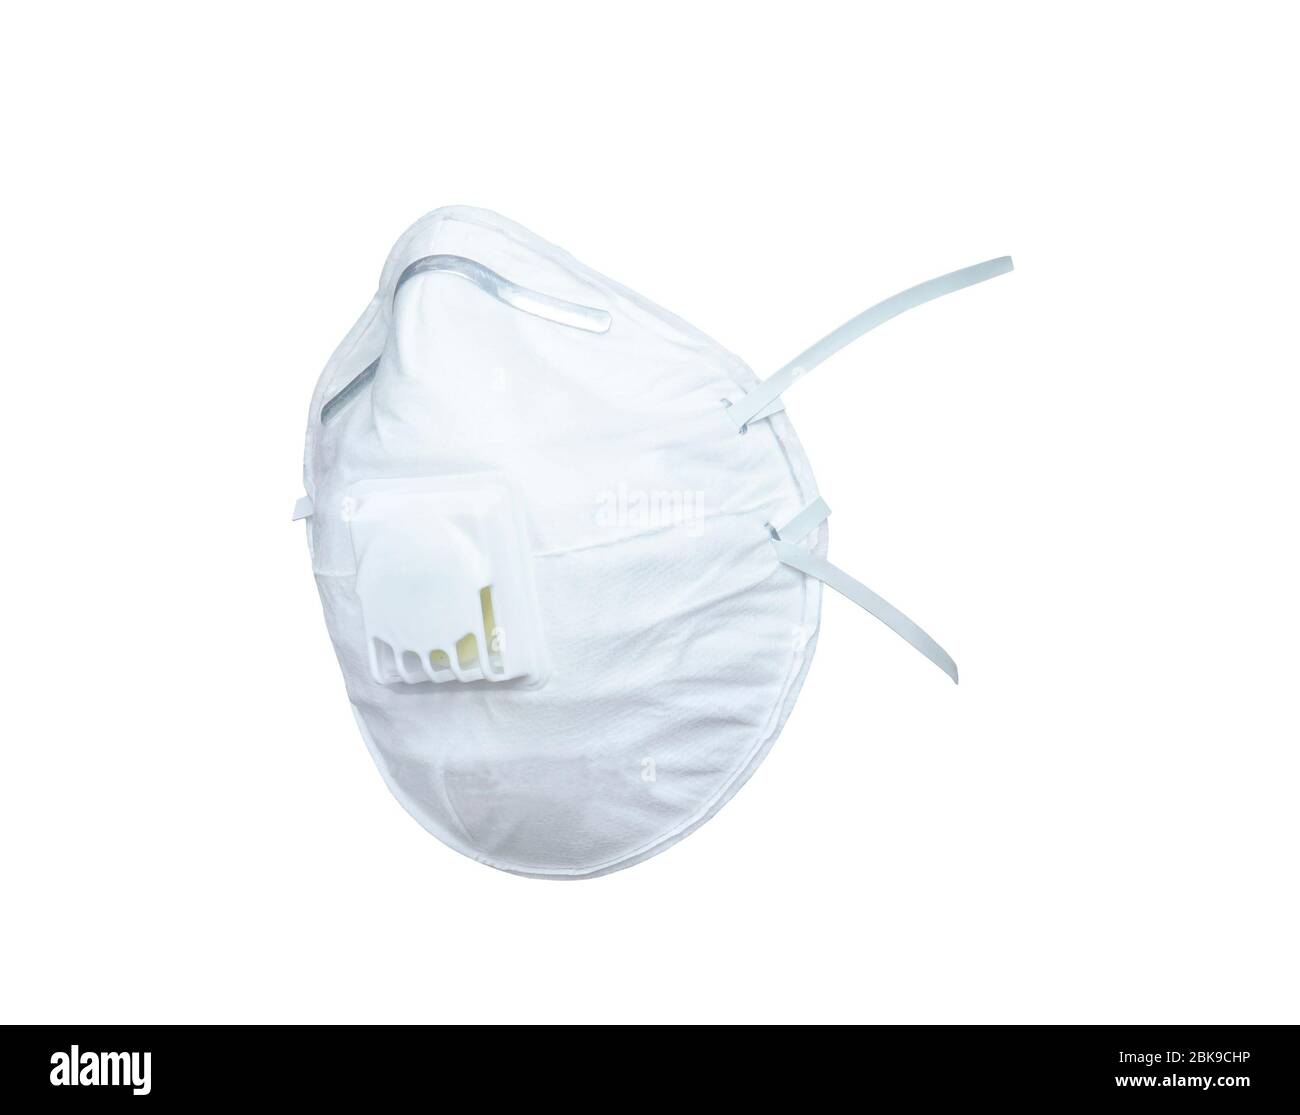 Masque n95 blanc protège le filtre contre la pollution de l'air ...